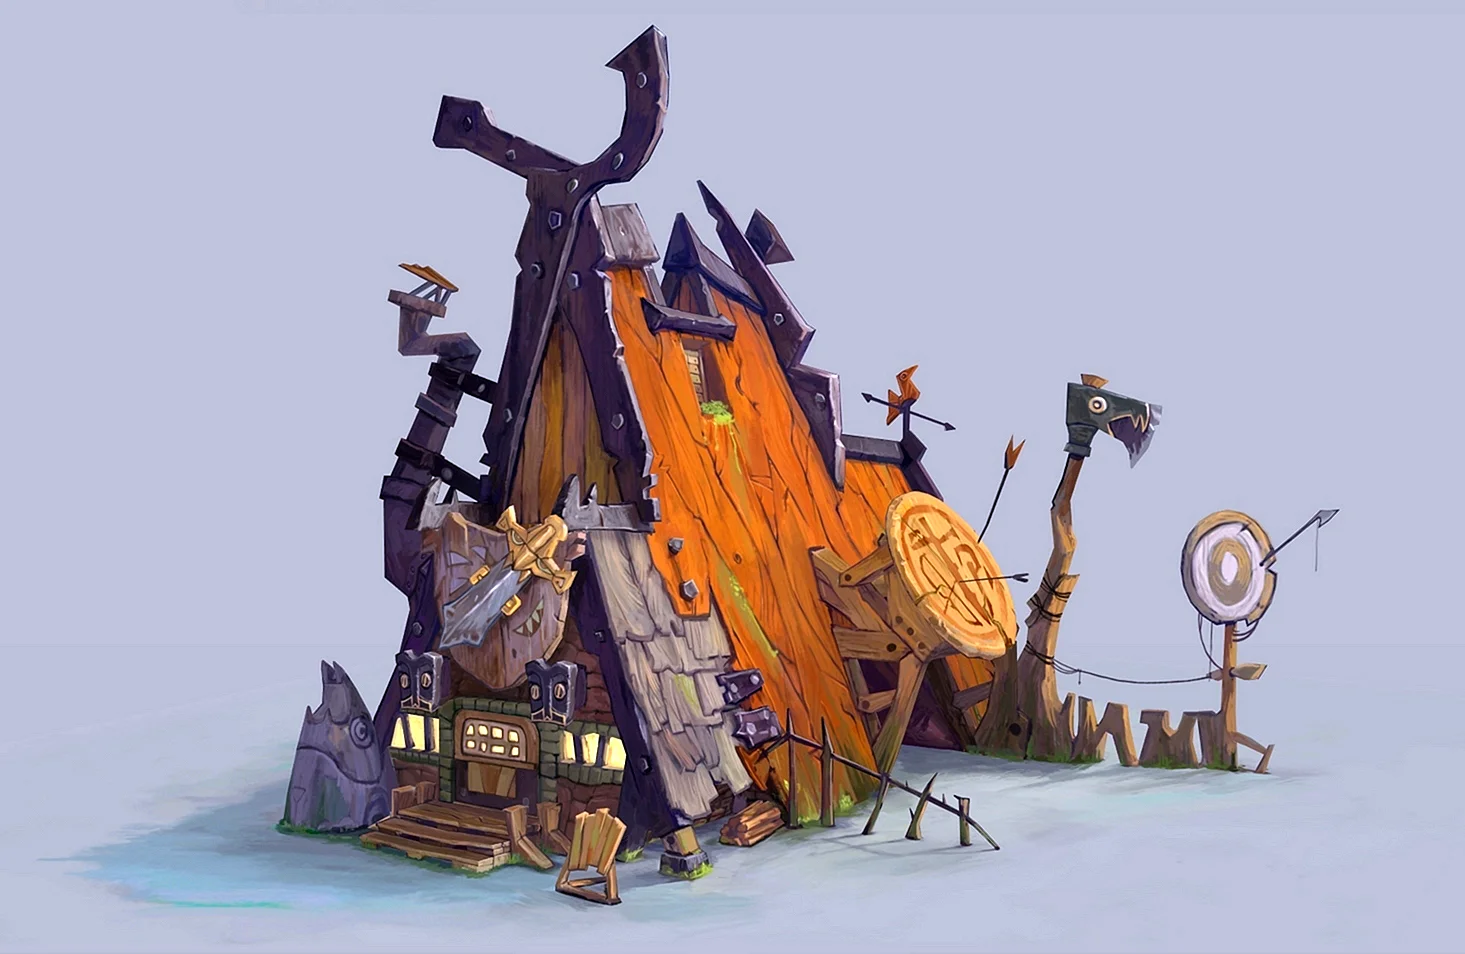 Деревня викингов концепт-арт